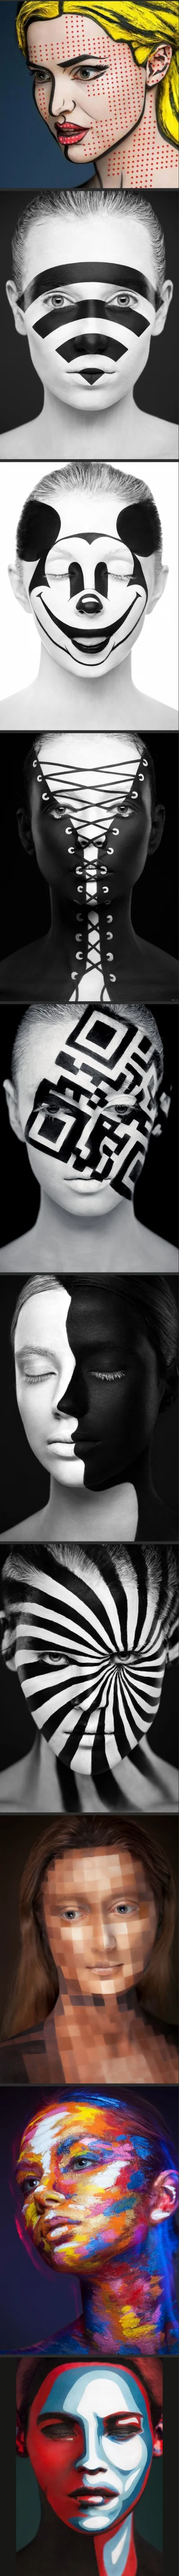 lennyface - #sztuka #malowanie #twarze #art

Valeriya Kutsan 

dużo więcej http://img...